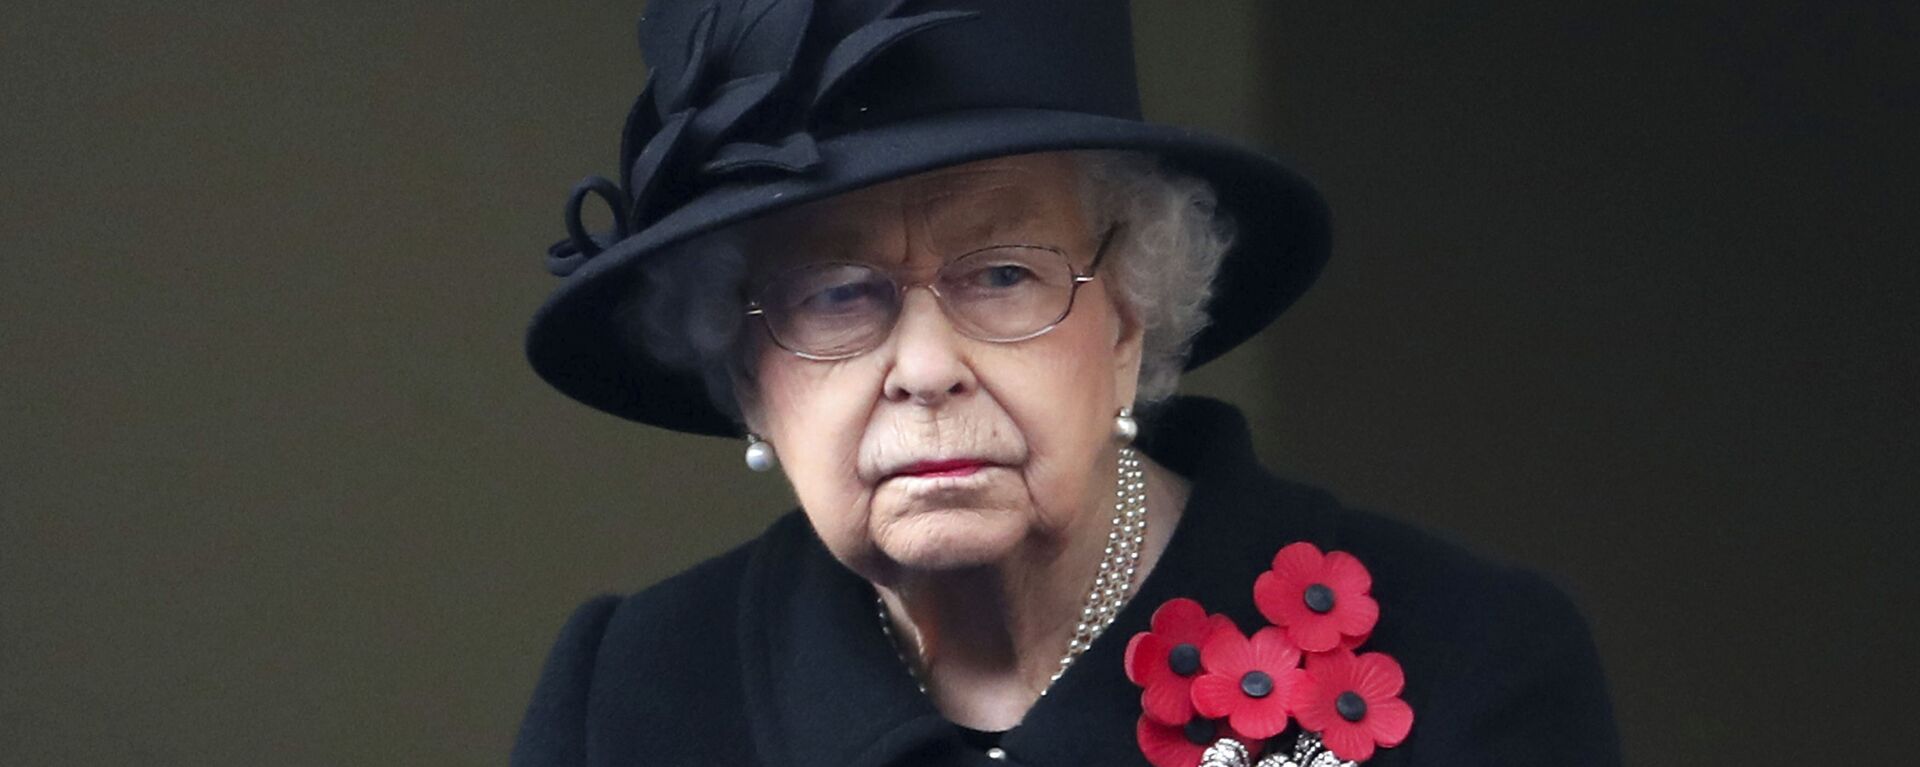 Nữ hoàng Elizabeth II của Anh nhìn từ ban công của Bộ Ngoại giao, trong buổi lễ Chủ nhật tưởng nhớ tại Cenotaph, ở Whitehall, London, Chủ nhật ngày 8 tháng 11 năm 2020 - Sputnik Việt Nam, 1920, 27.10.2021